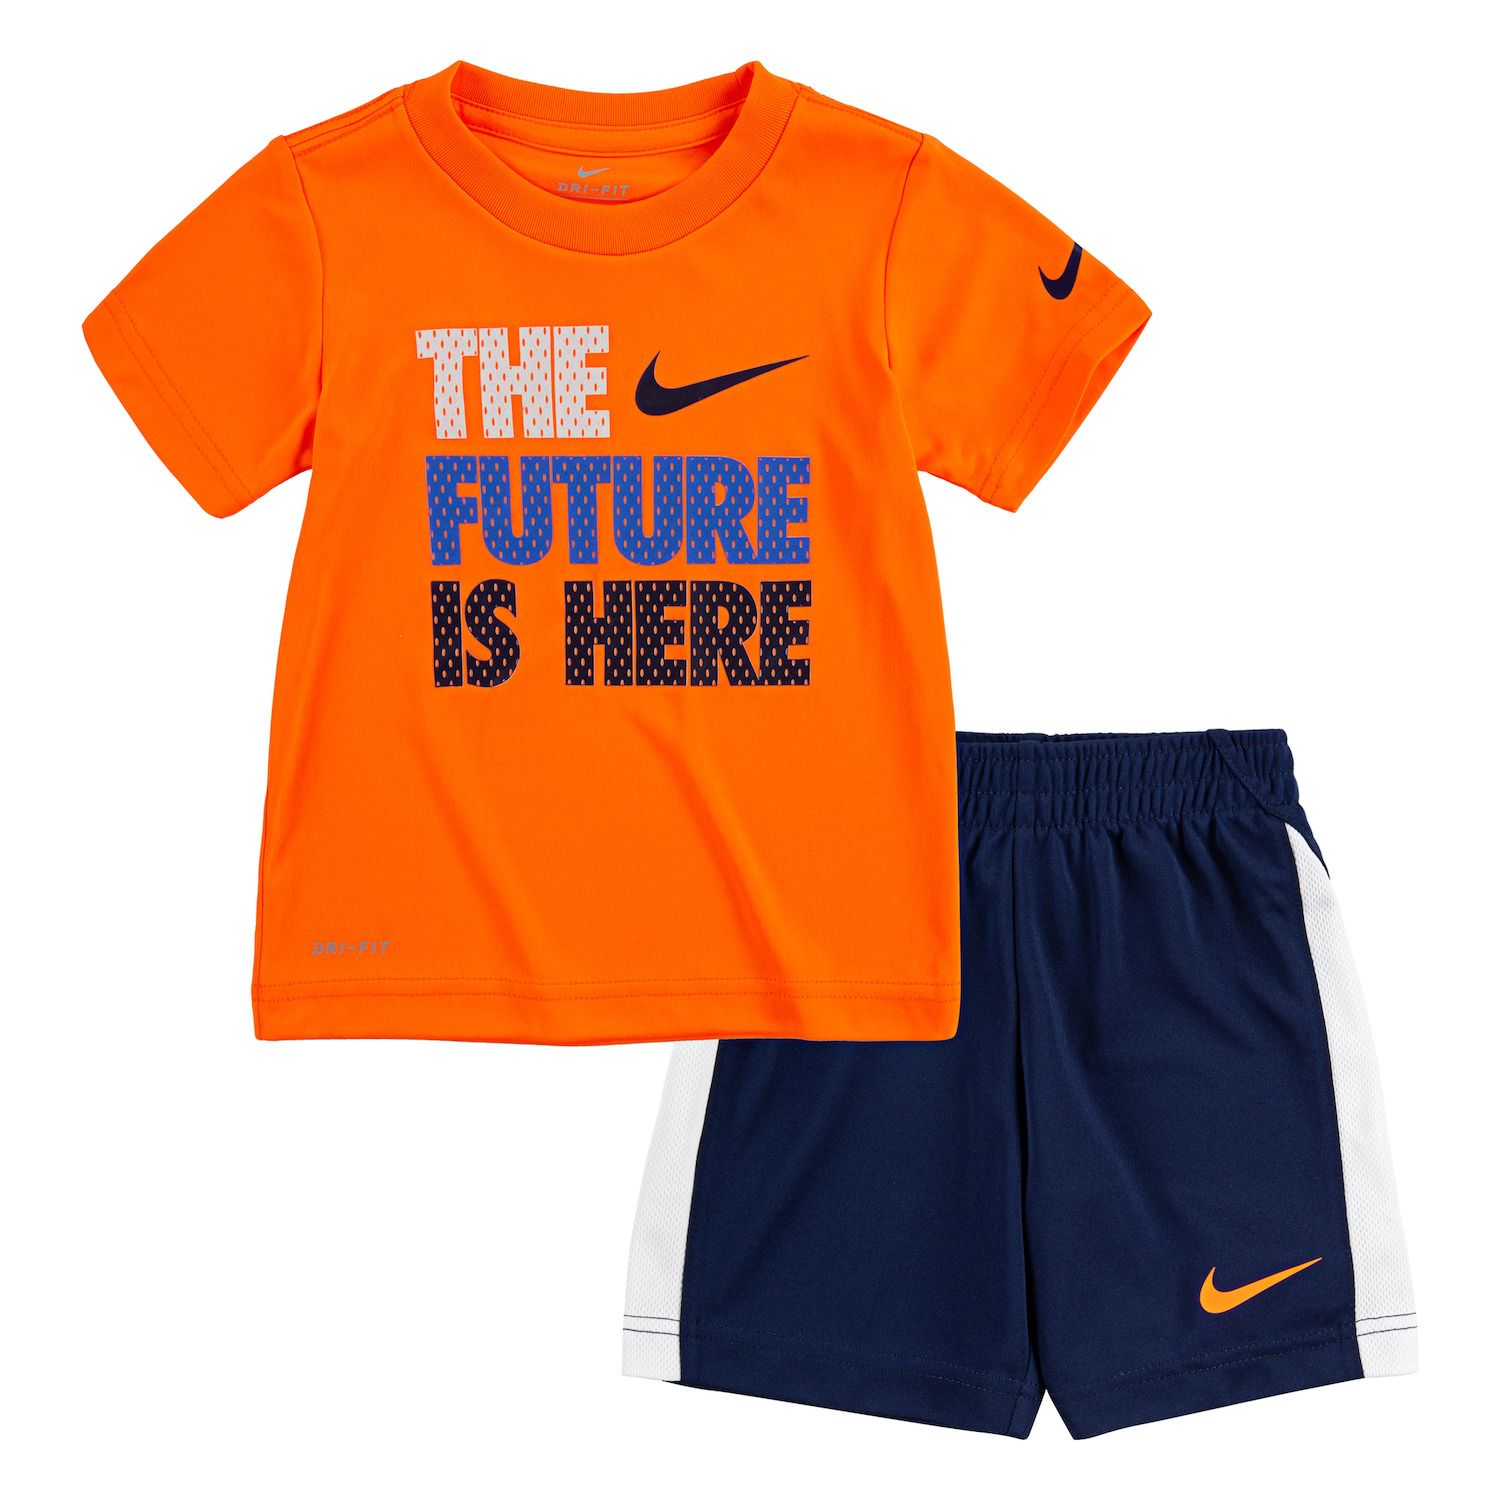 orange nike toddler shirt